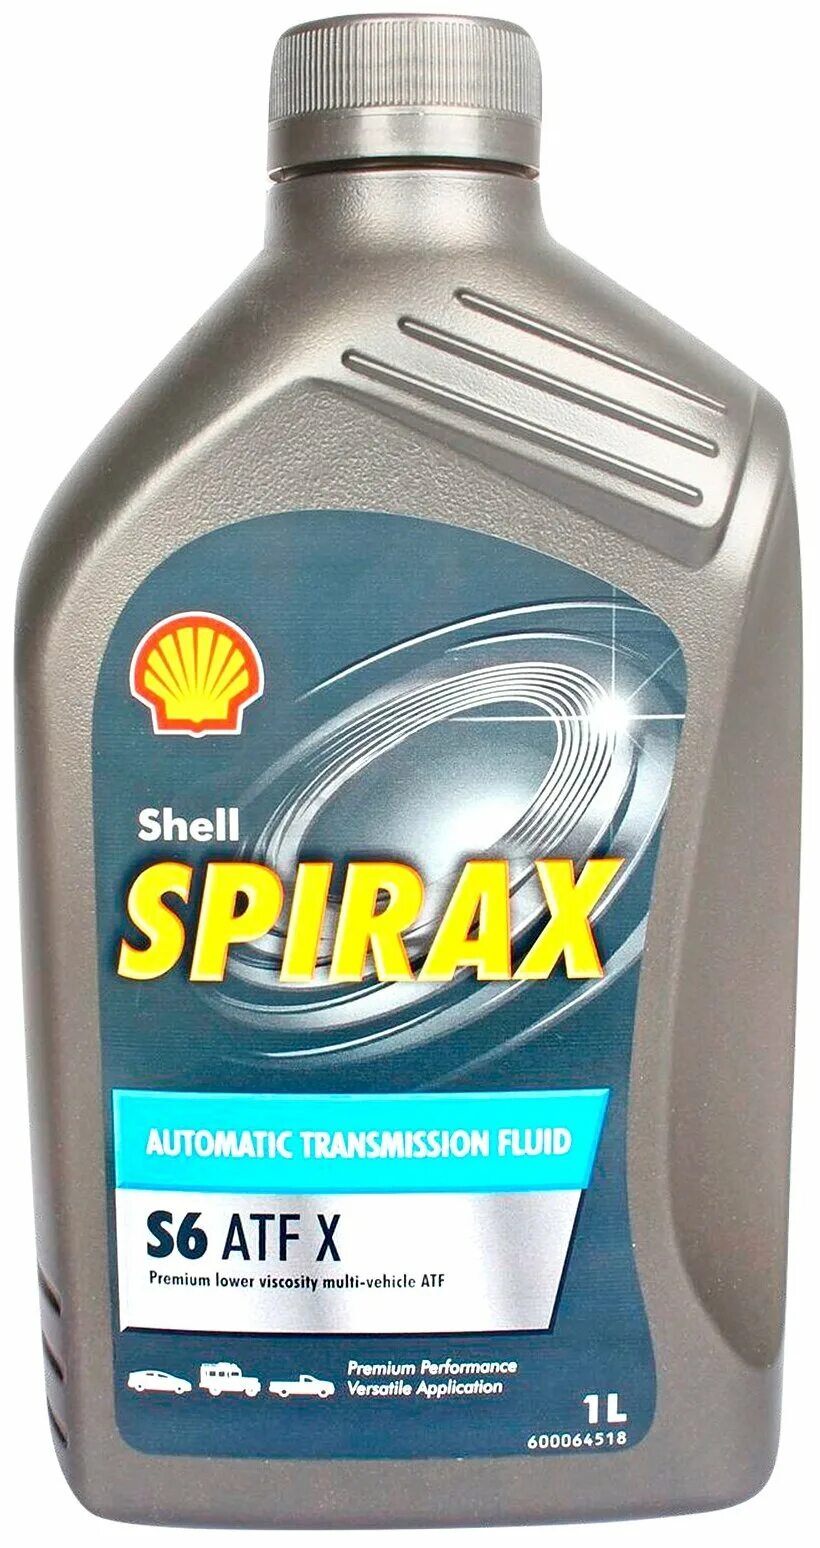 Spirax s6 atf x. Shell Spirax s6 ATF. Shell Spirax s6 ATF X. Трансмиссионное масло Shell Spirax s6 ATF X.